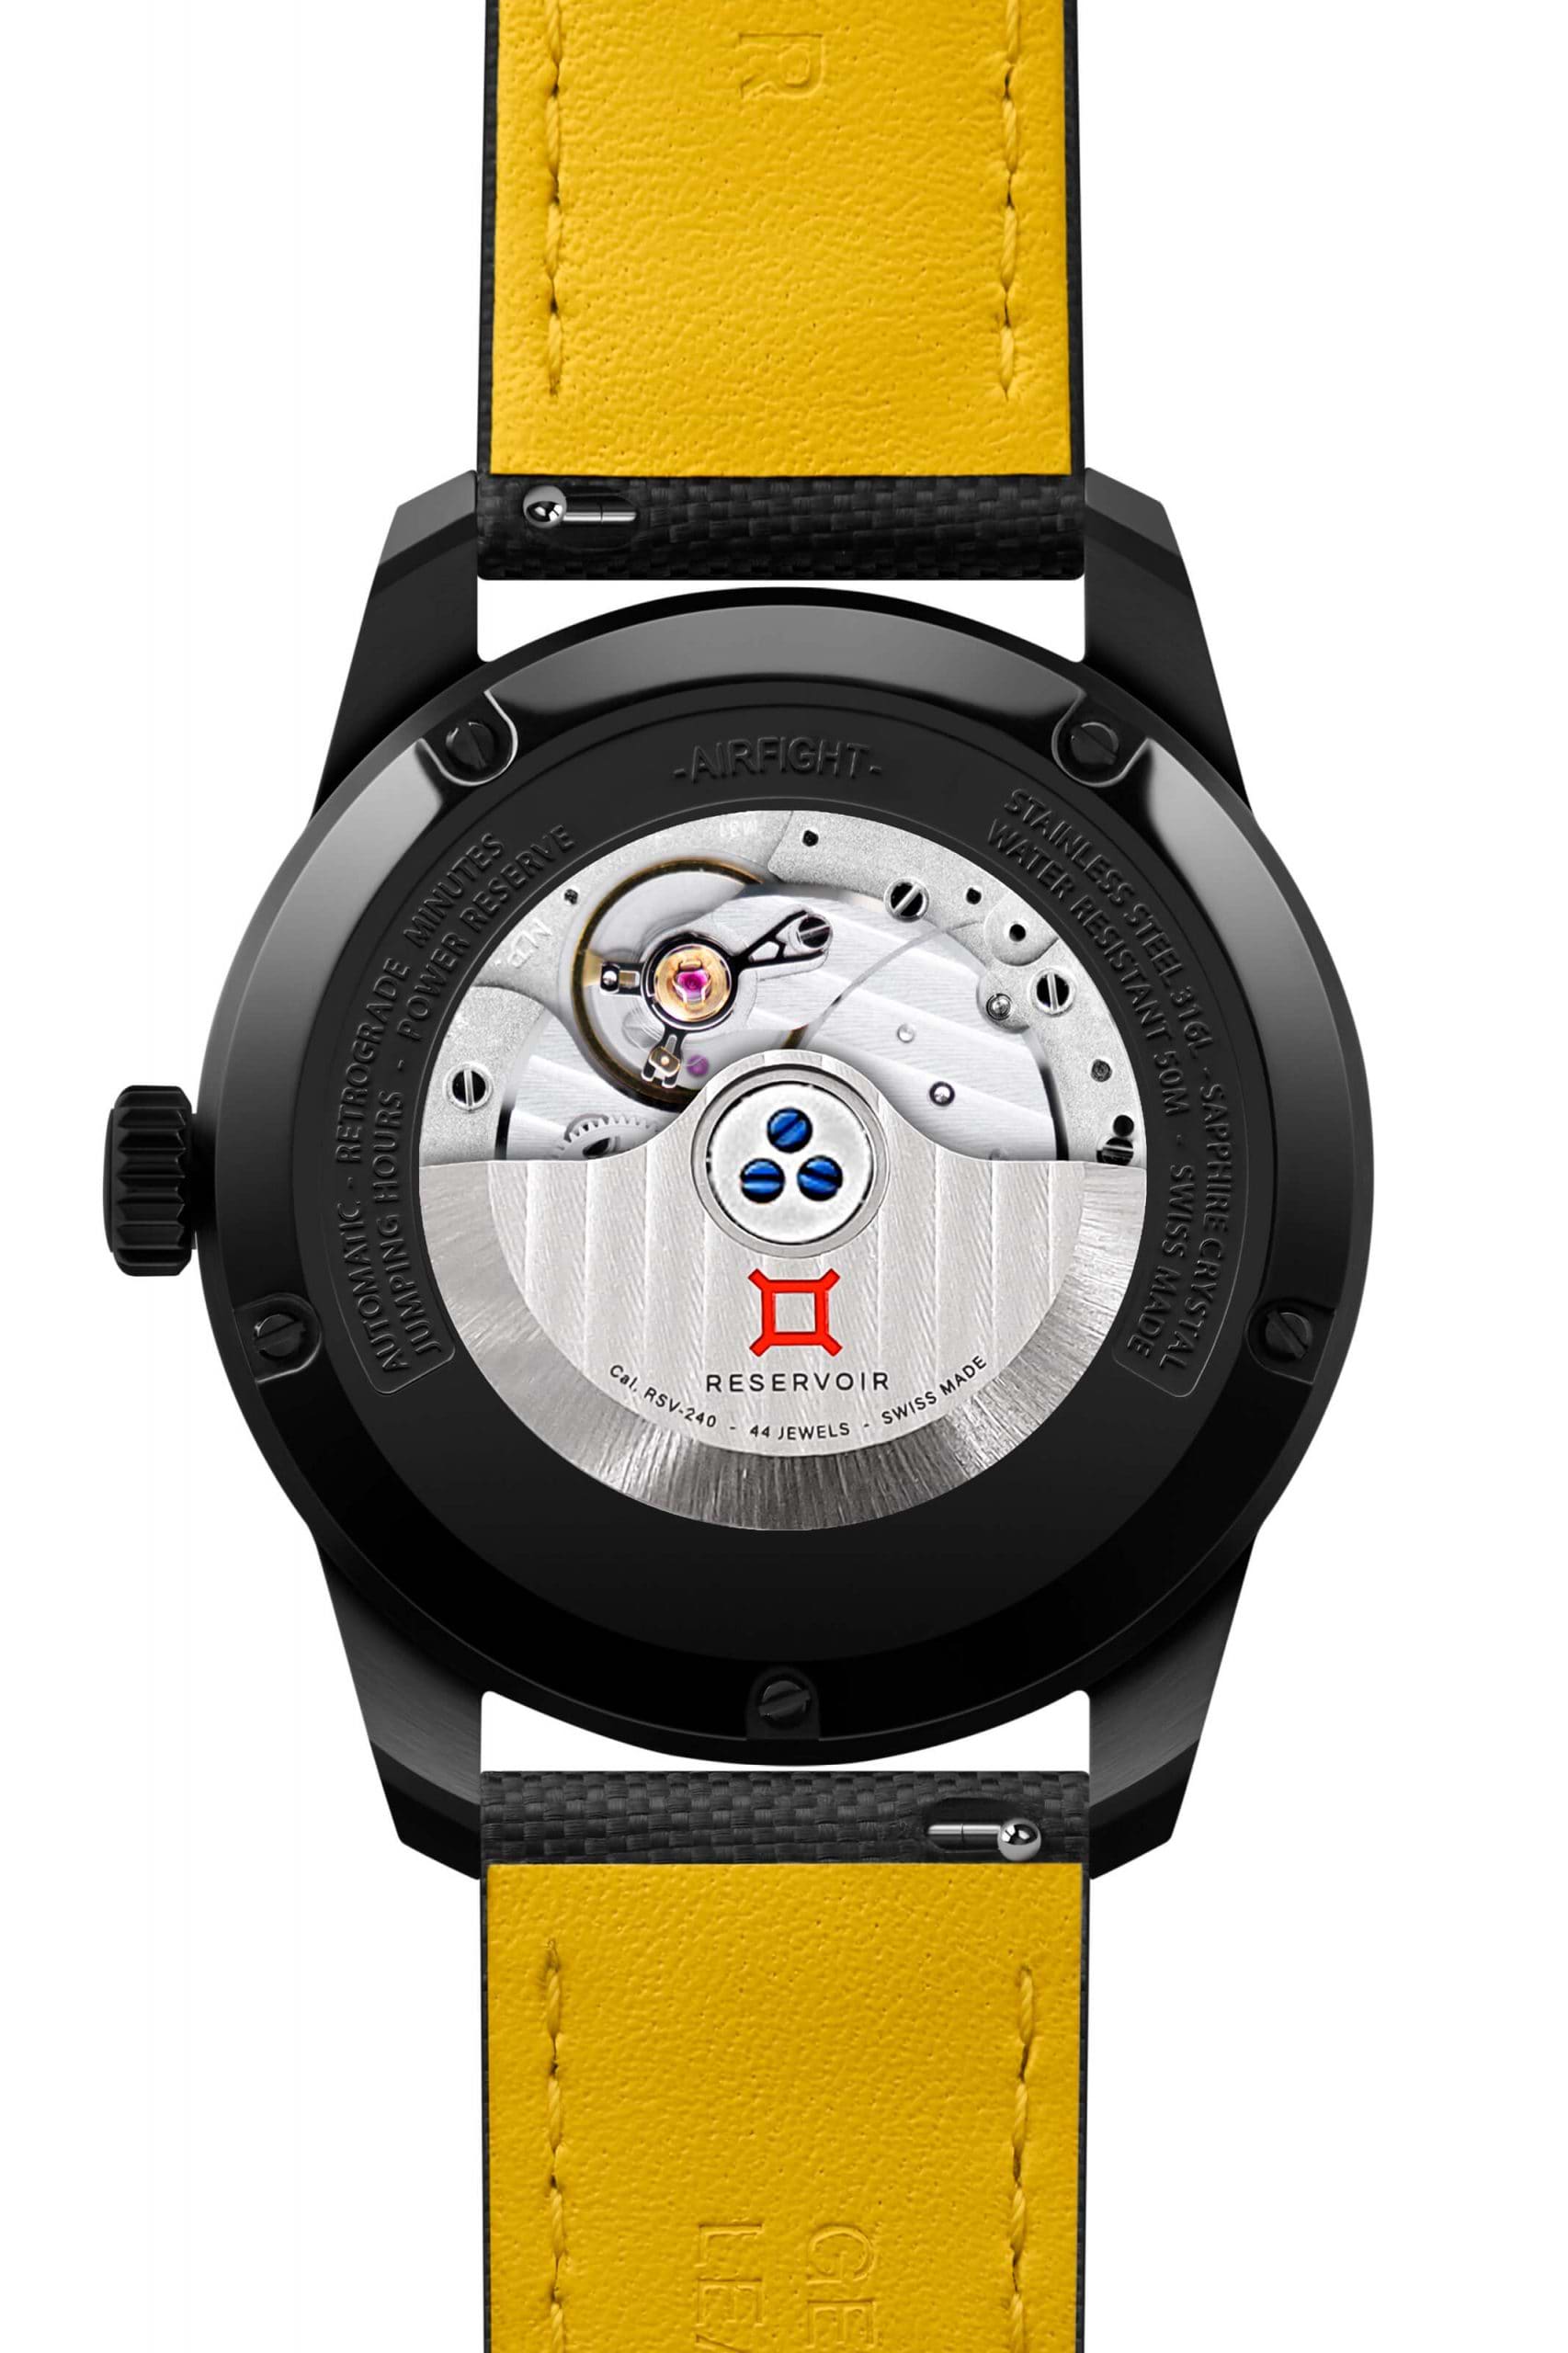 Fond voir de la montre-bracelet automatique &quot;Reservoir&quot; montrant le mouvement mécanique, le noir boîtier, et le jaune bracelet.